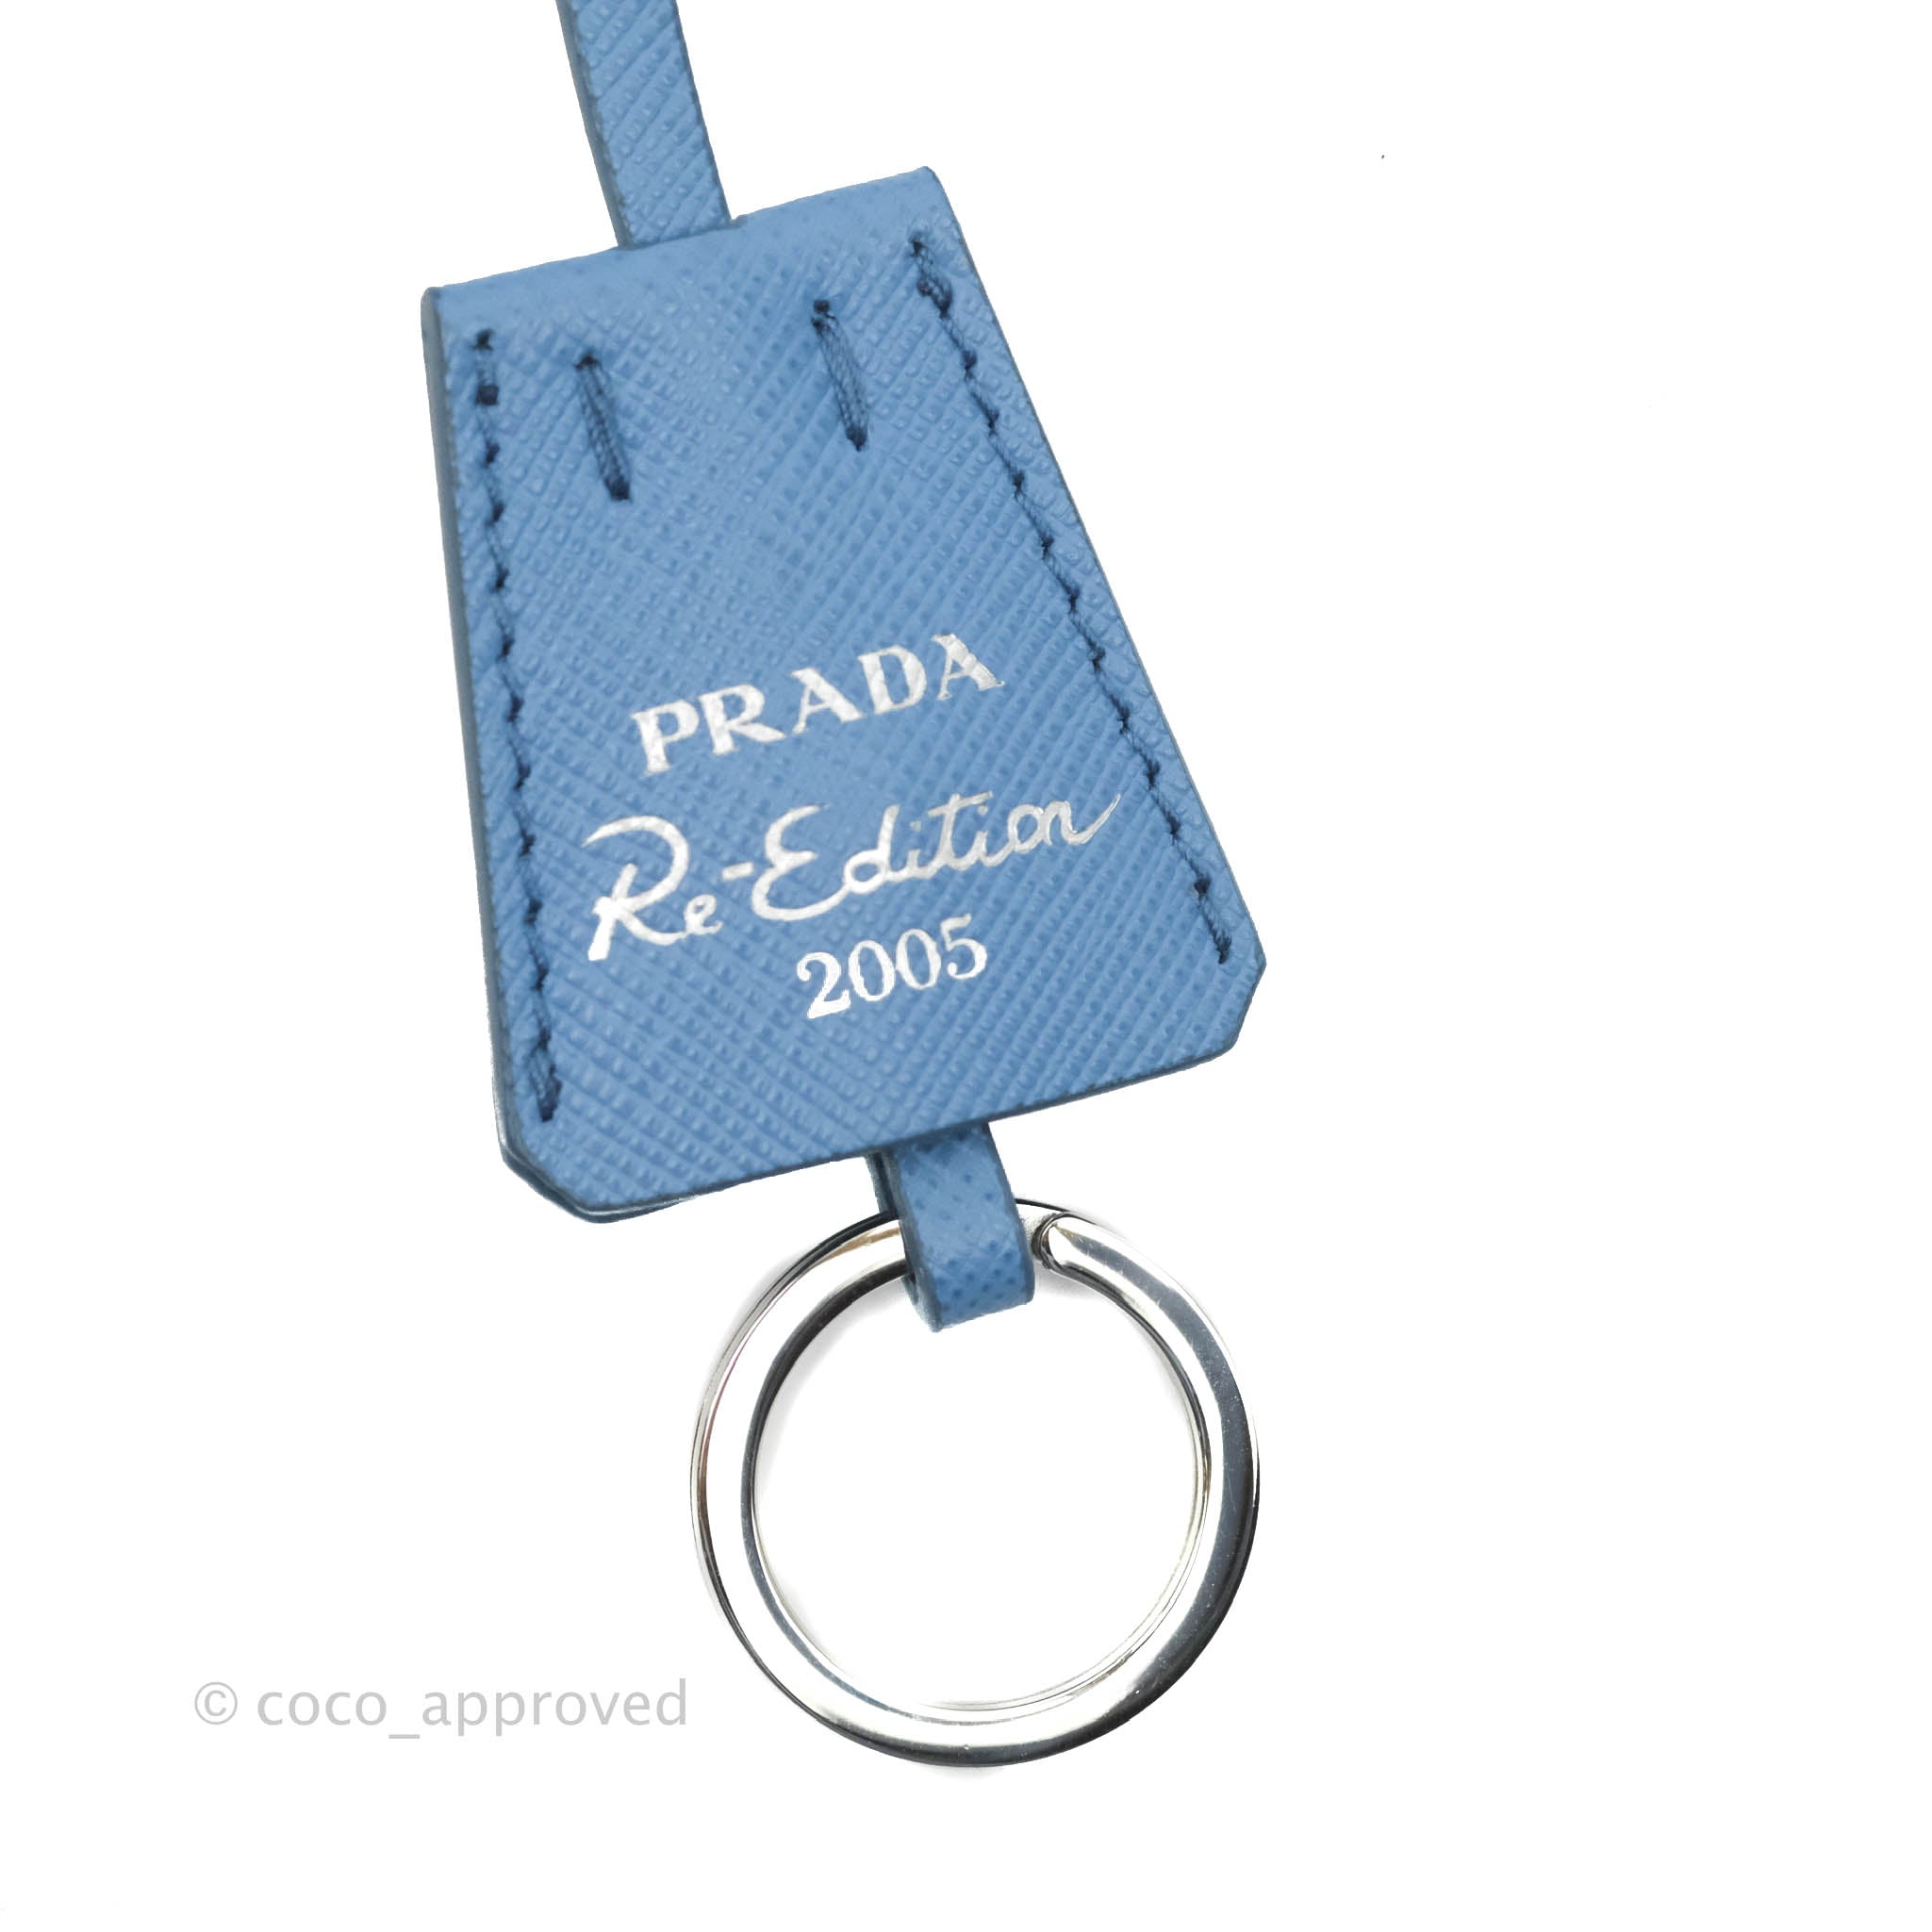 prada re edition 2005 blue